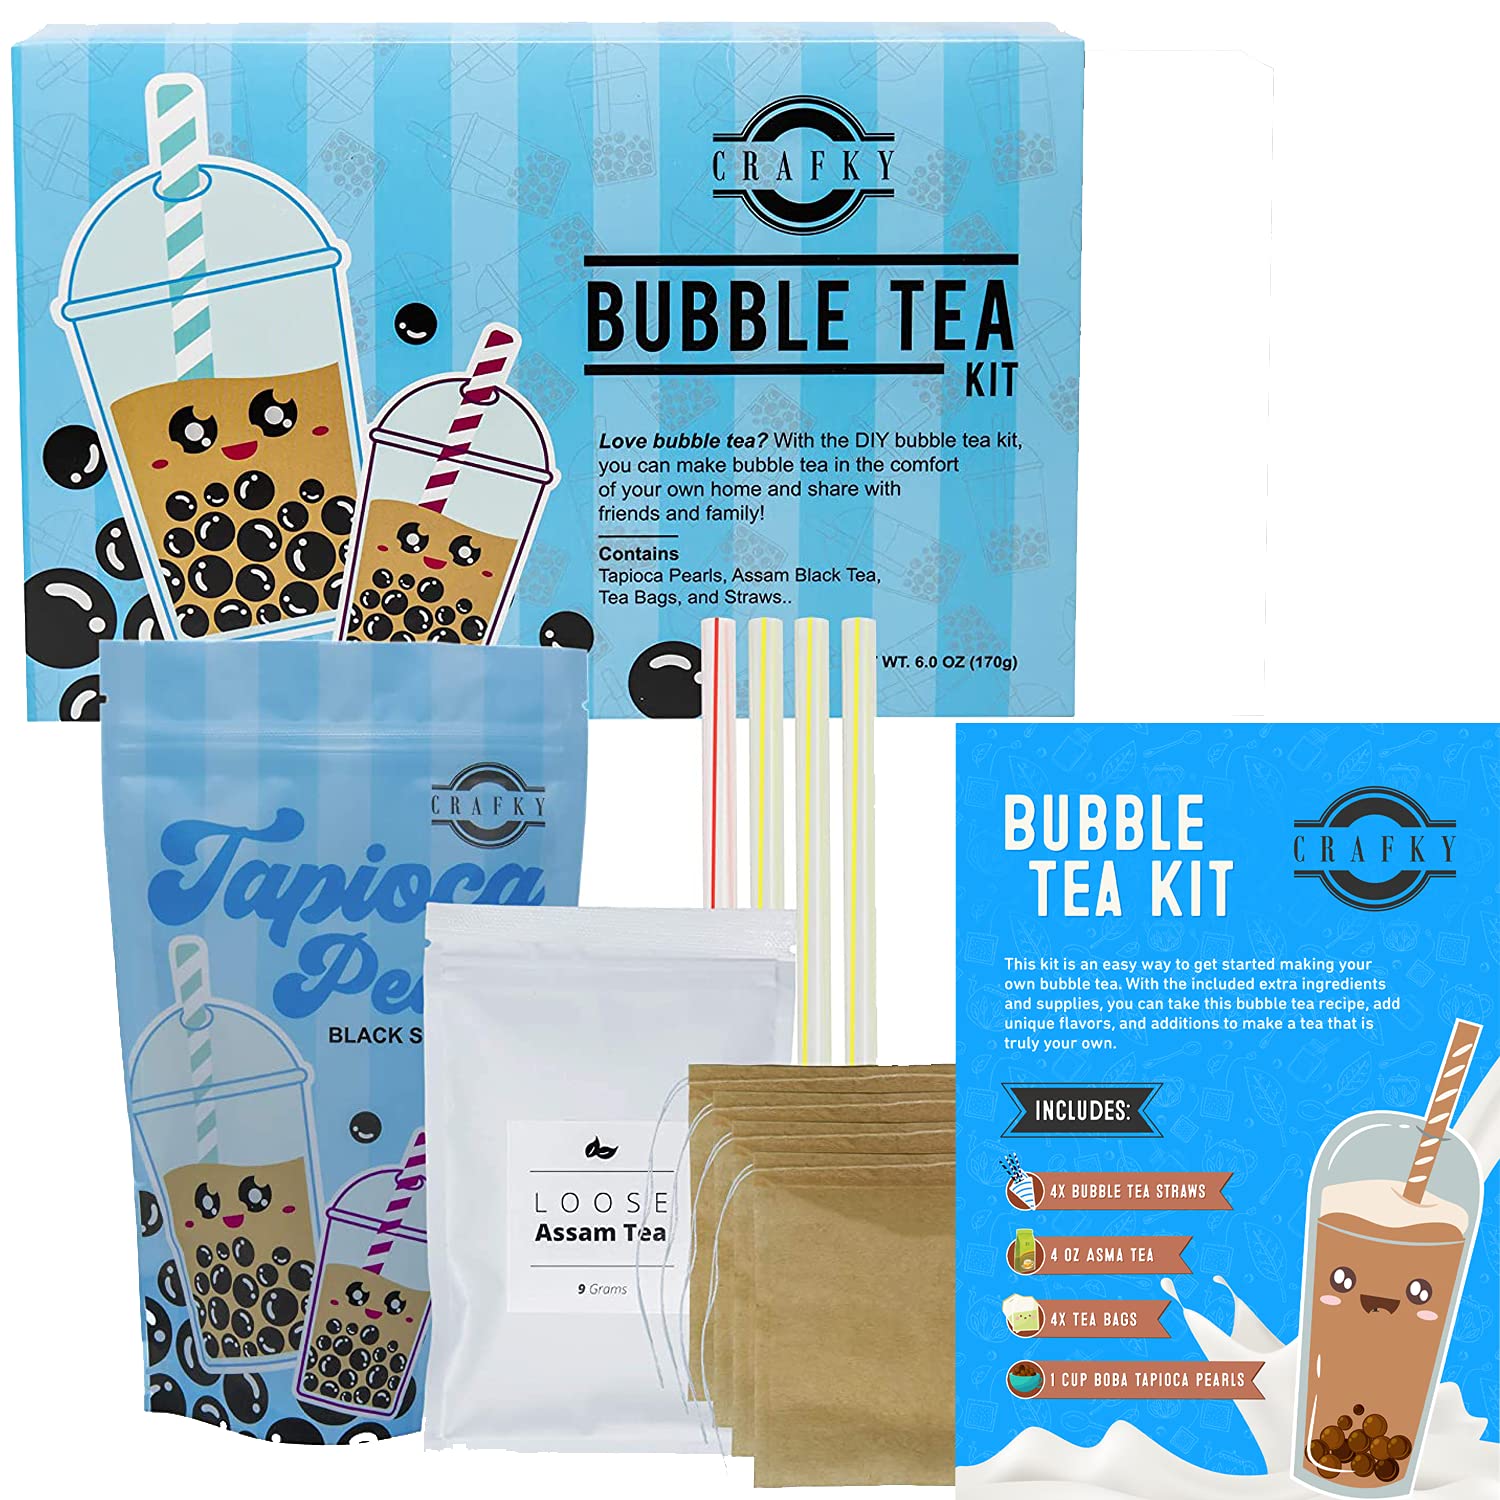 Bubble Tea Kit